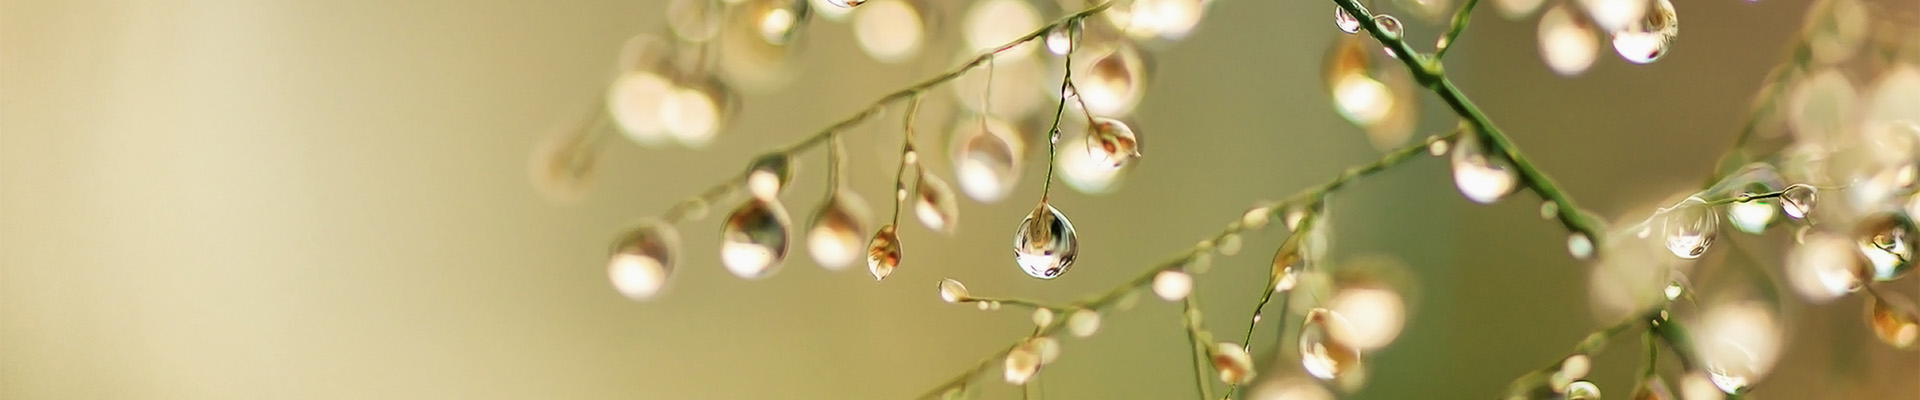 Droplets on vegetation